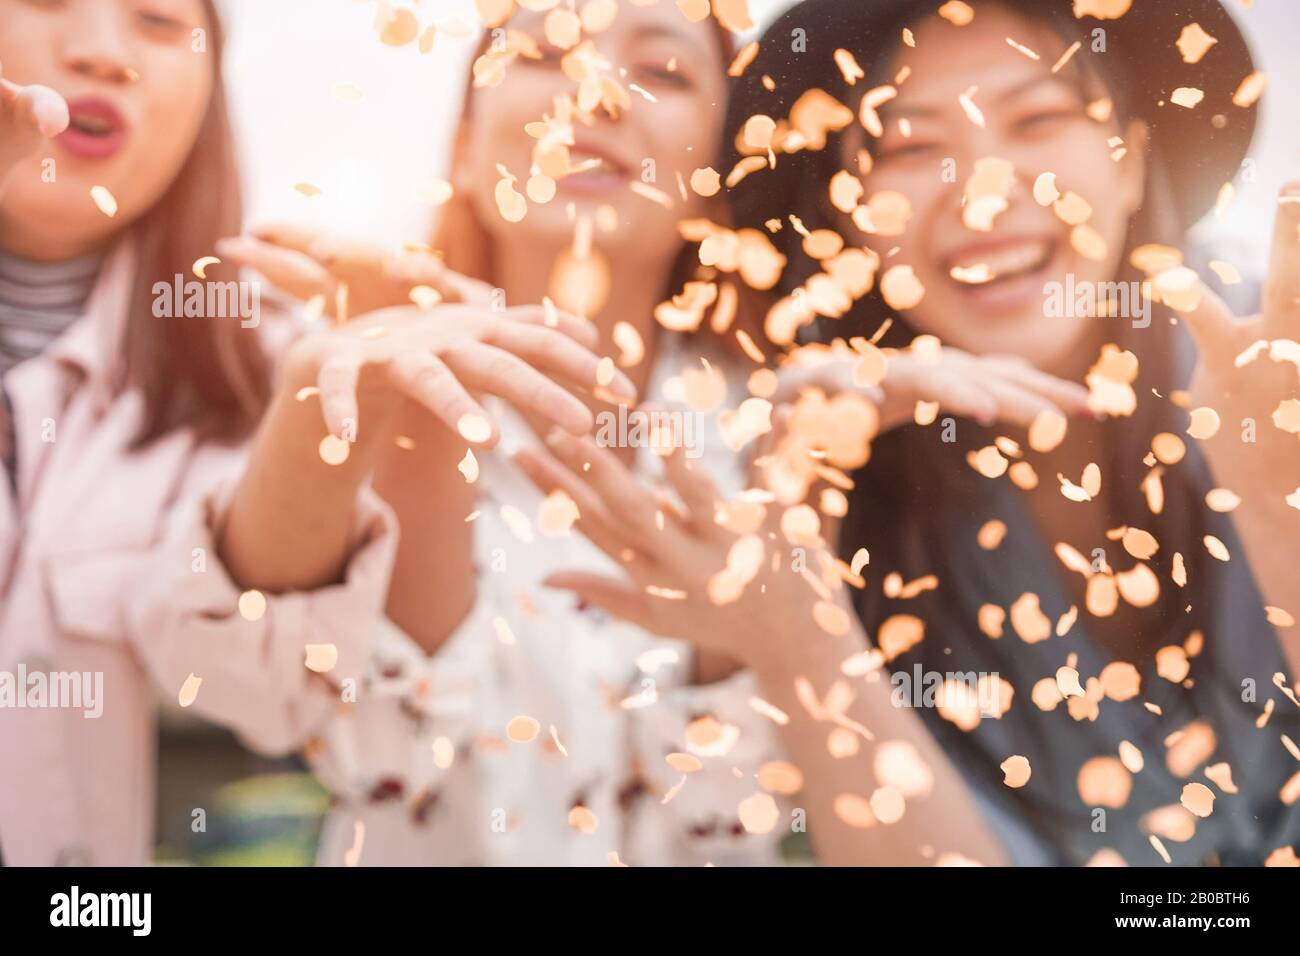 Gli amici asiatici sfocati che si divertono a lanciare confetti al party all'aperto - giovani alla moda che si divertono all'evento del festival - Hangout, amicizia, tendenze e gioventù Foto Stock